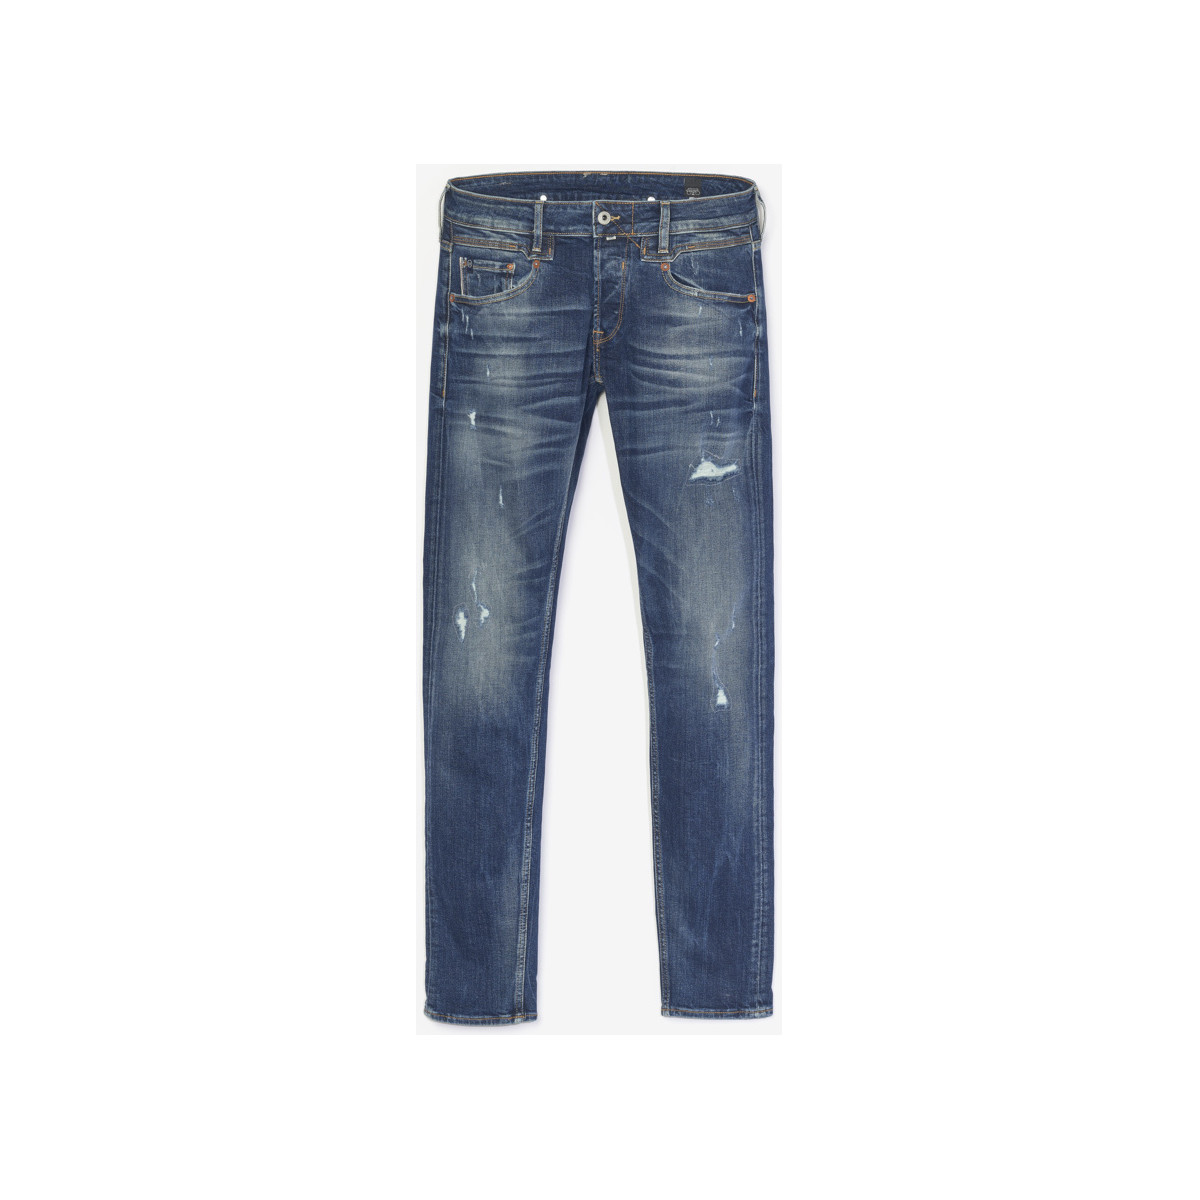 Le Temps des Cerises Bleu Trial 700/11 adjusted jeans destroy bleu ImU3Dm4r